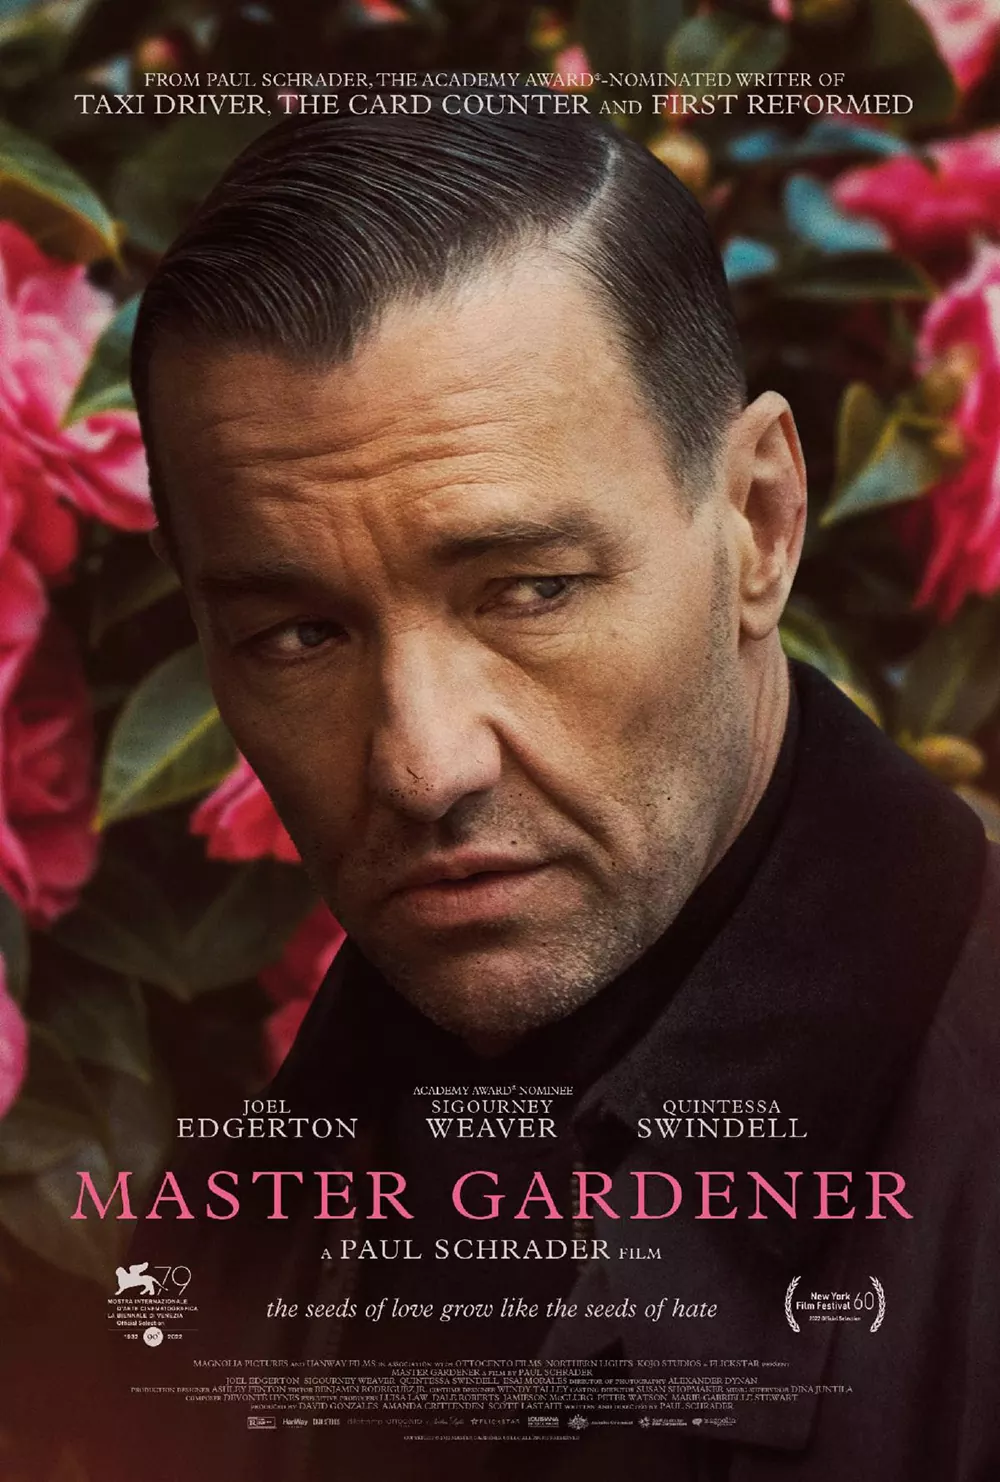 Trailer Από Το Δραματικό Θρίλερ "Master Gardener"